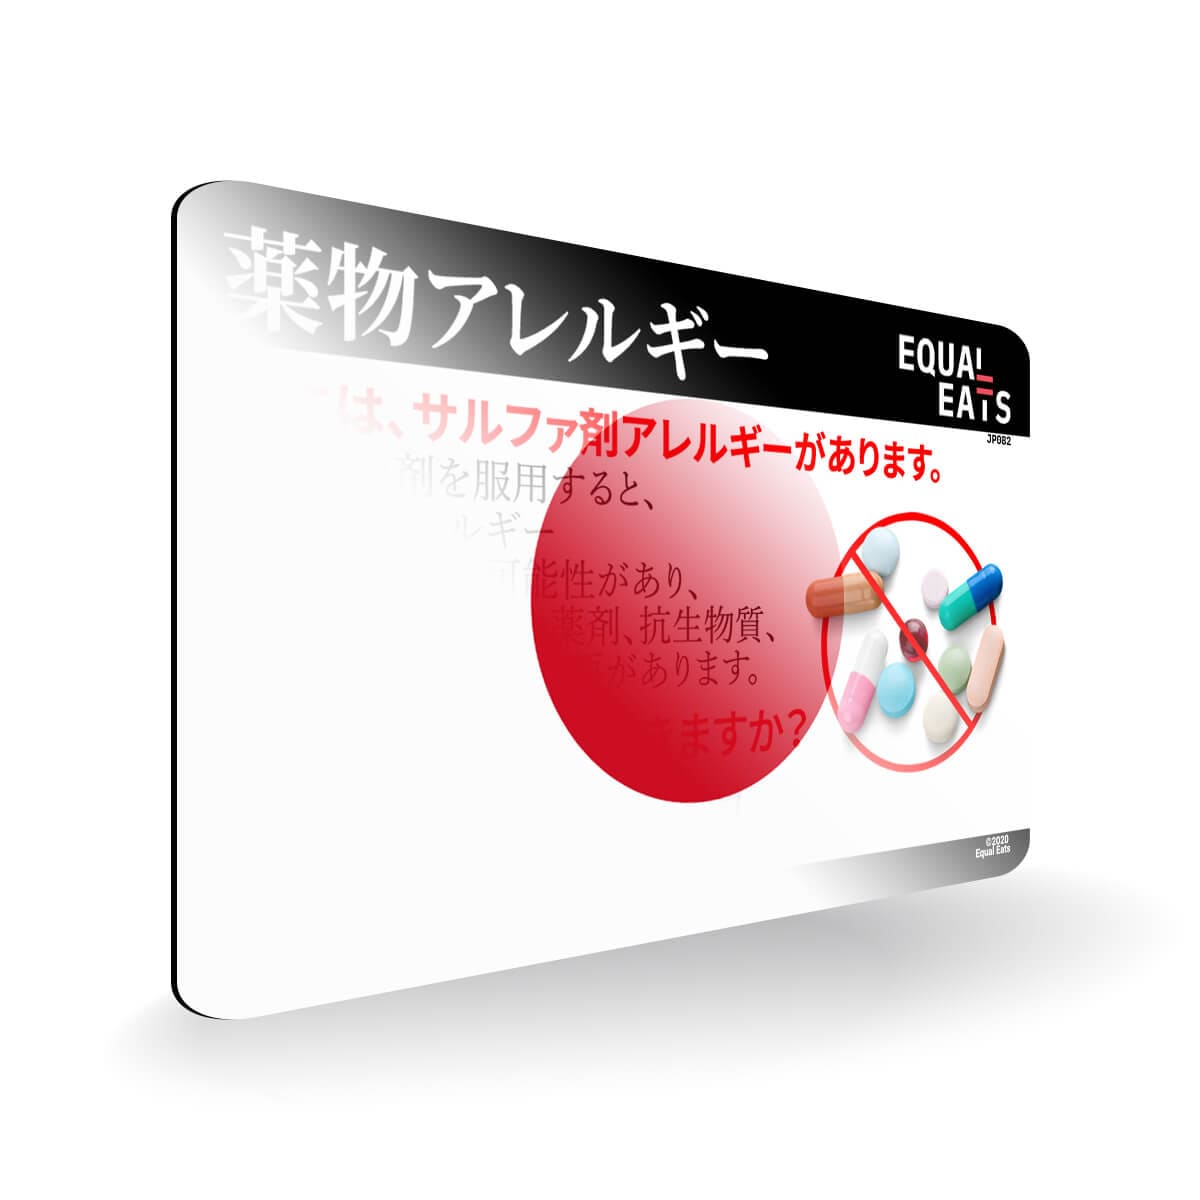 Sulfa Allergy in Japanese. Sulfa Medicine Allergy Card for Japan